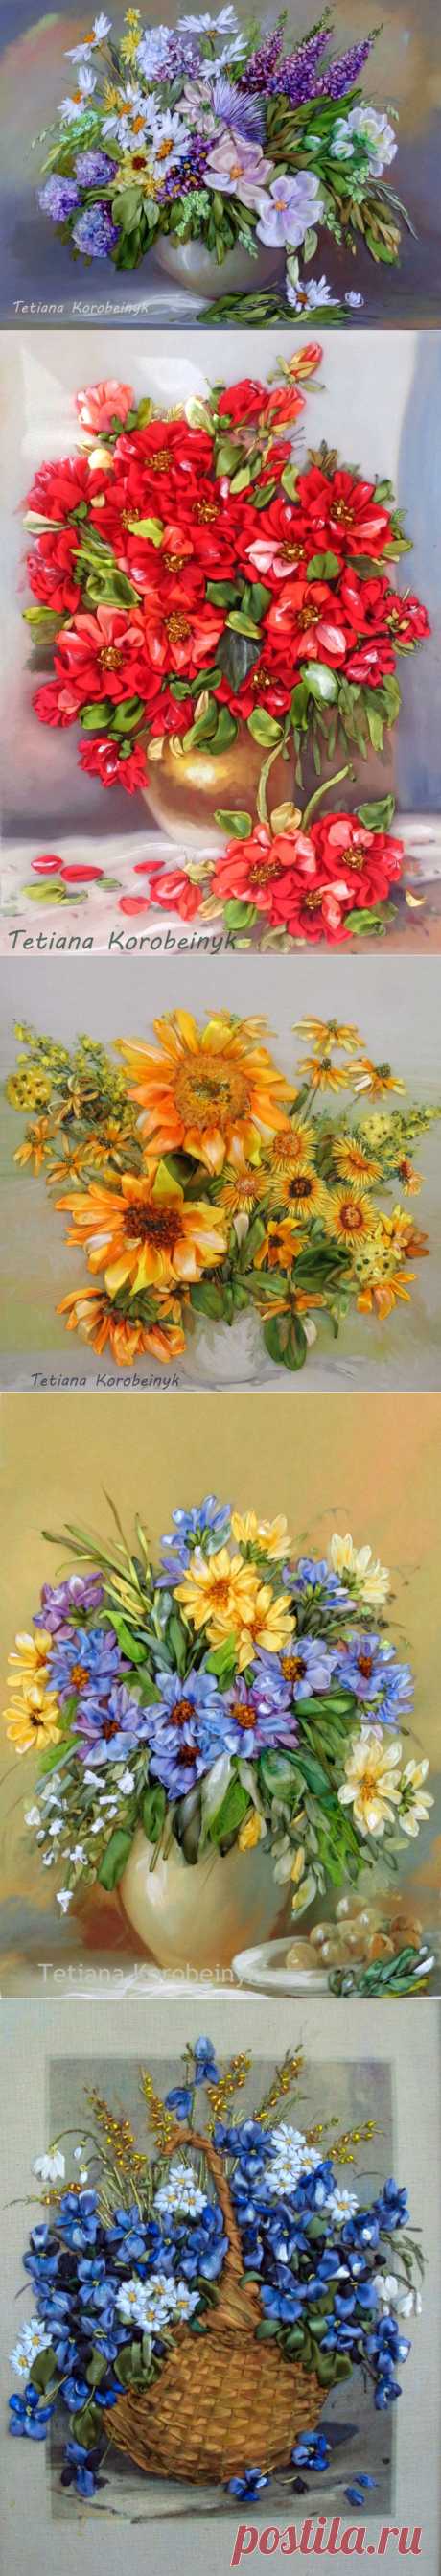 Цветочные букеты - вышивка лентами. 
Многие работы Tetiana Korobeinyk вышила по картинам современной венгерской художницы Szechenyi Szidonia